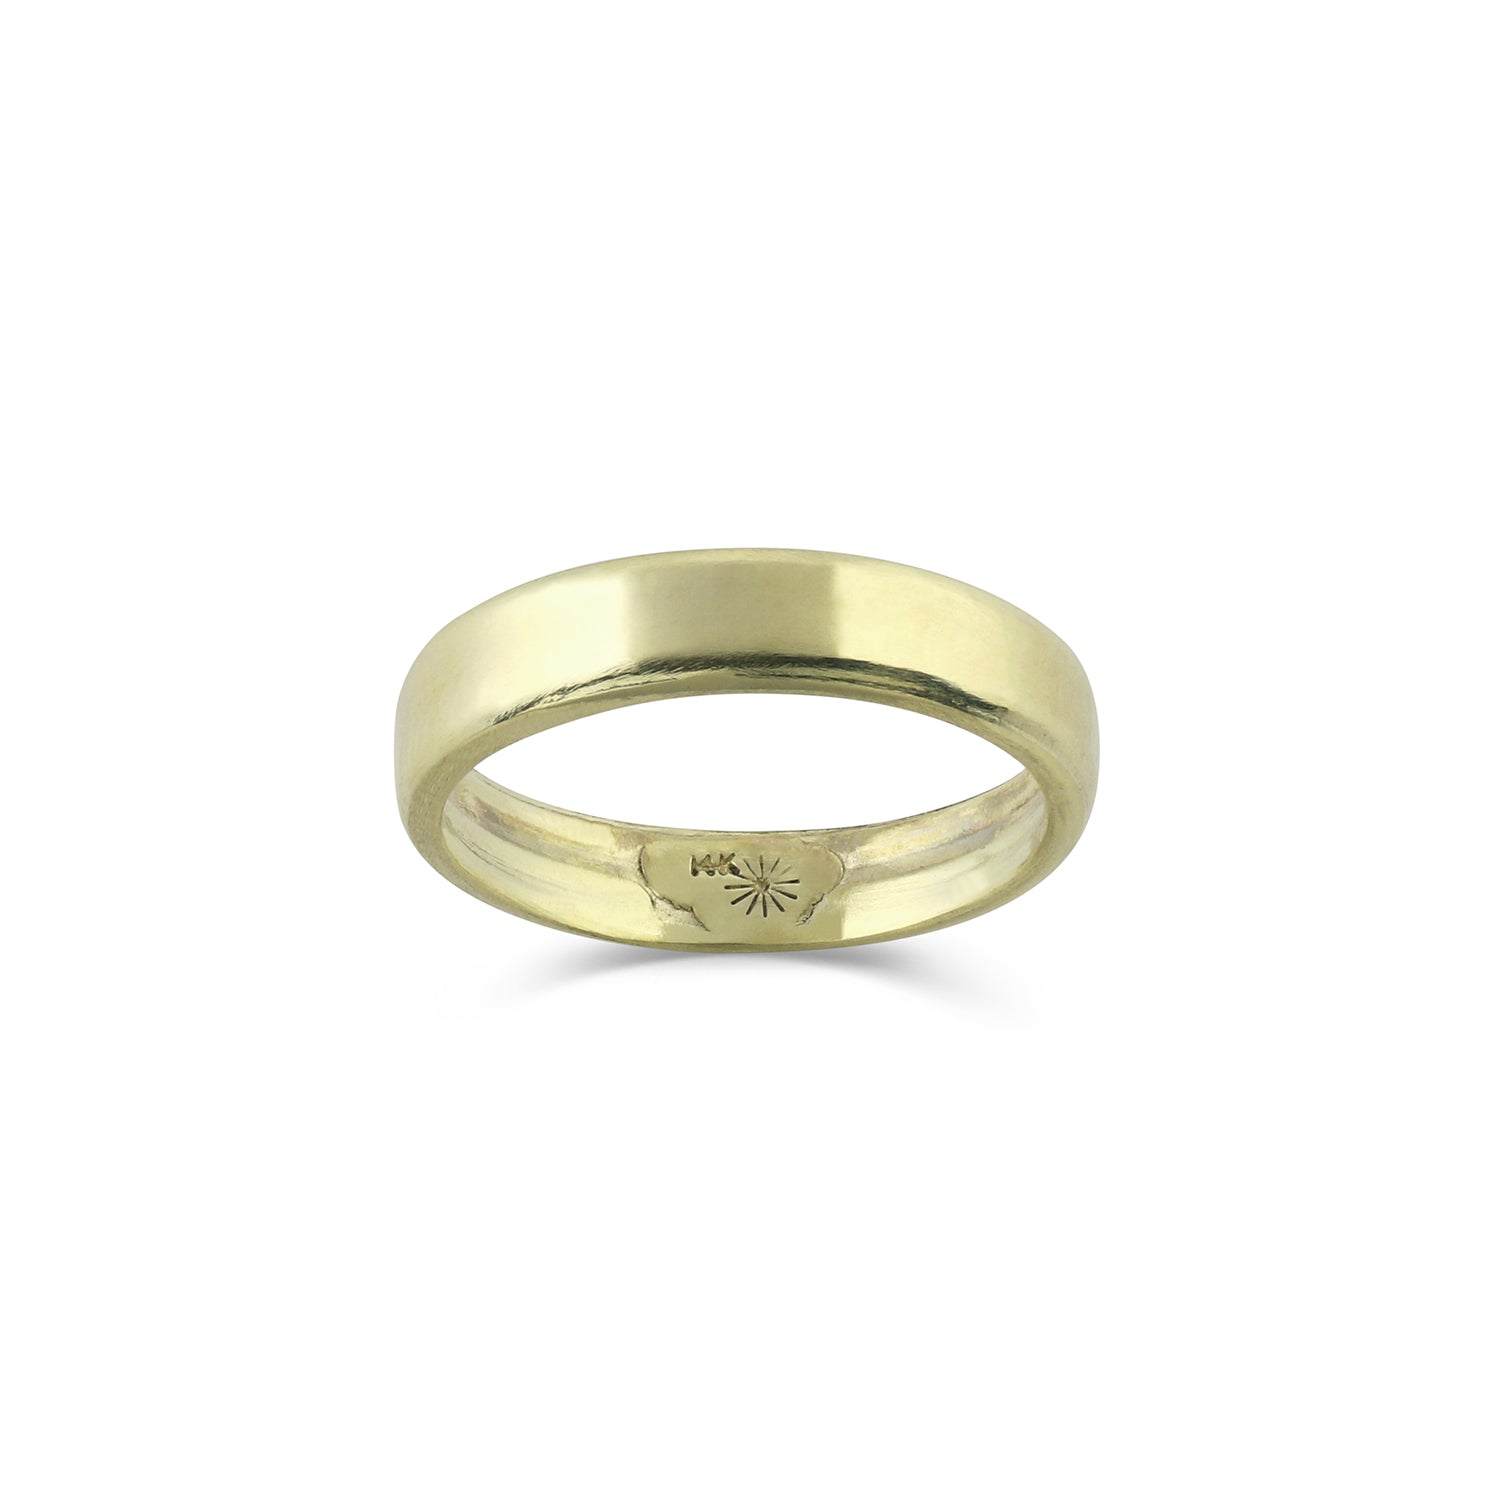 gender neutral bands gender neutral bands Electrum Gold Ring | 3mm wide